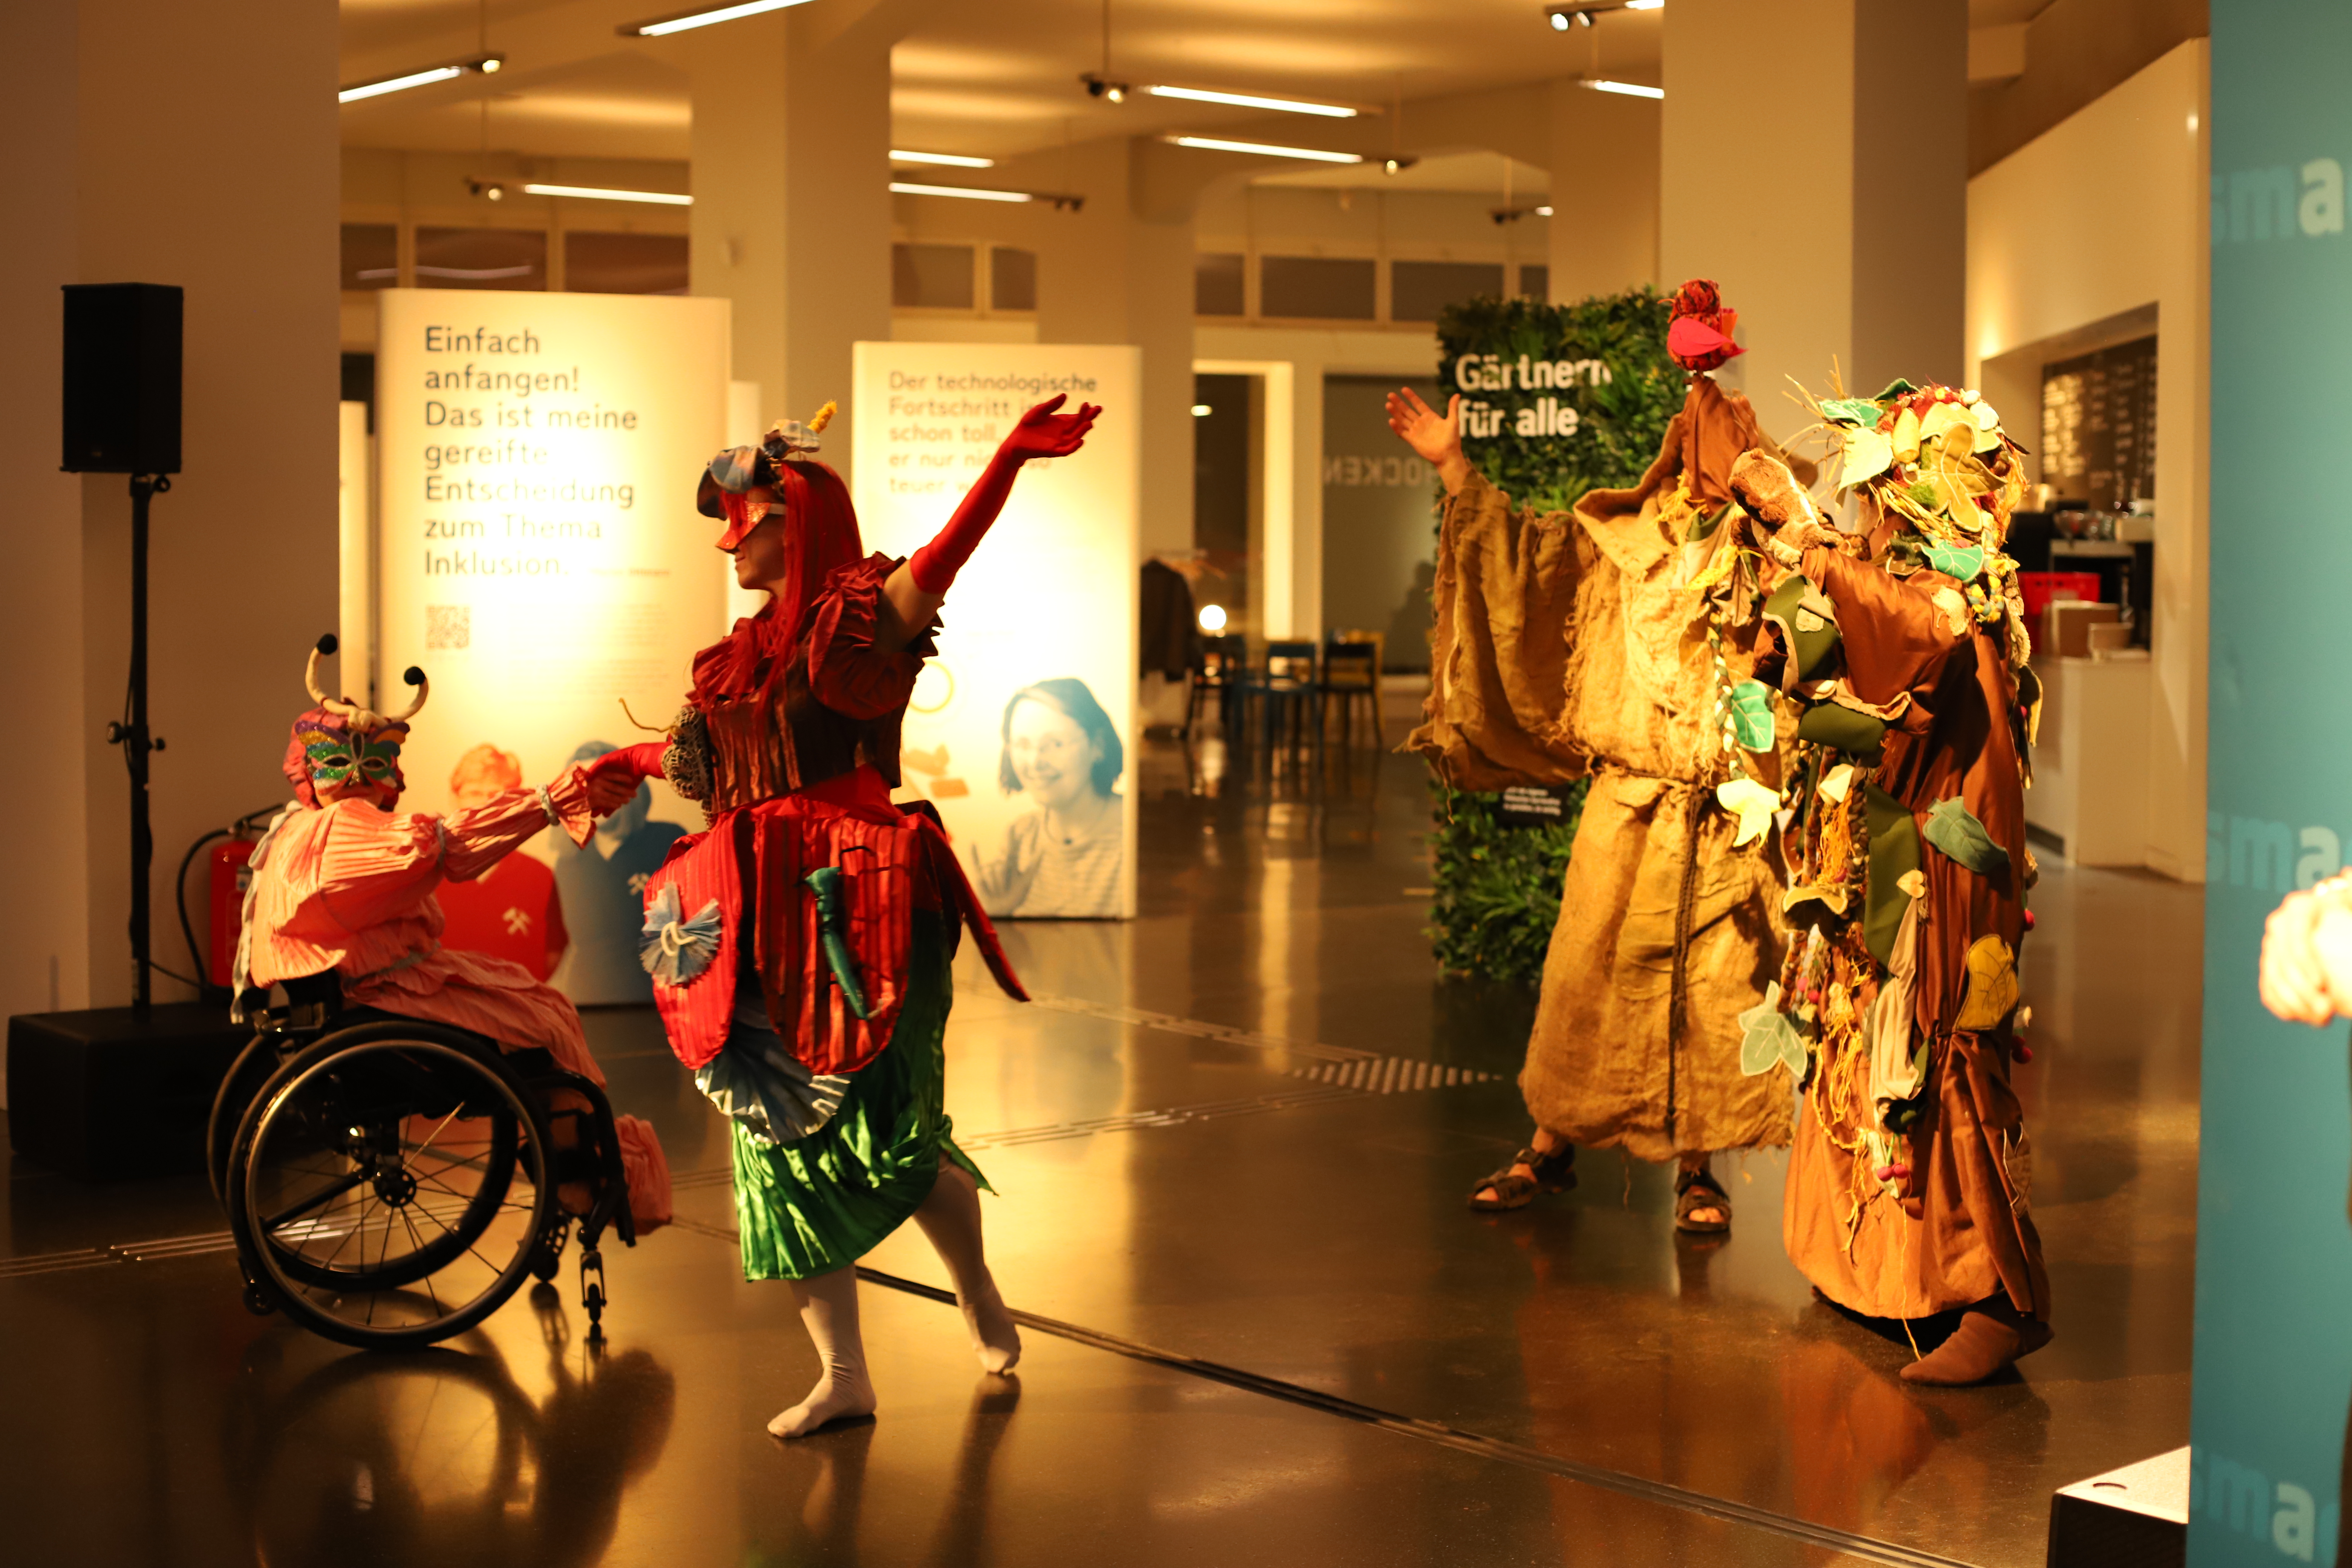 Die Theatergruppe des CAMO e.V. zeigt einen Ausschnitt aus ihrem Inklusion-Theaterstück „Francesco d`Assisi“. Es sind Tänzer in aufwendig gestalteten Kostümen zu sehen, die tanzen. Darunter ist auch eine Schauspielerin im Rollstuhl, die einen Schmetterling darstellt.